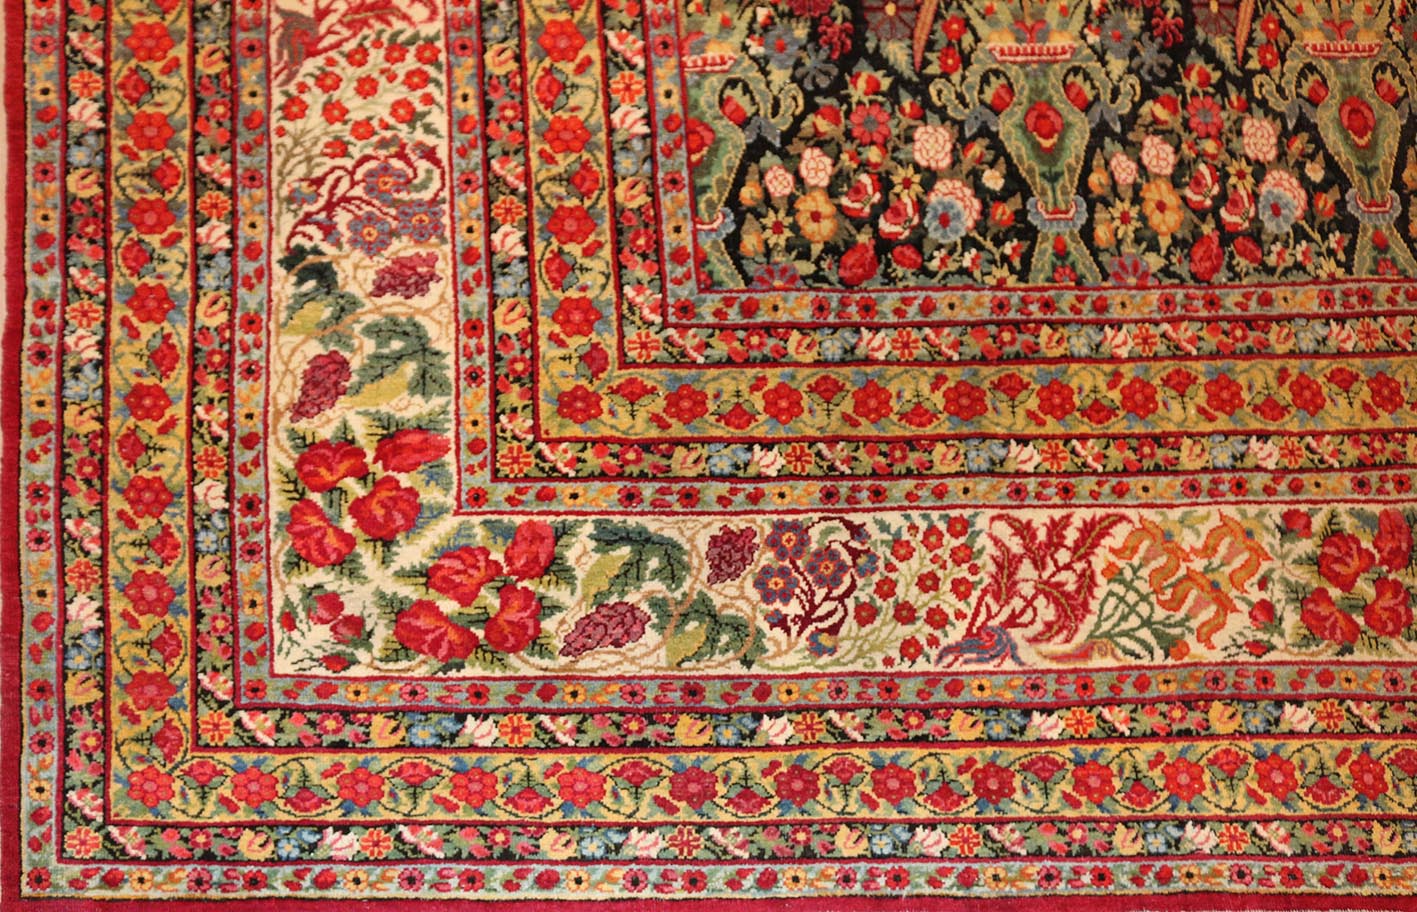  Detail of Kerman antique rug Carpet No.1023 